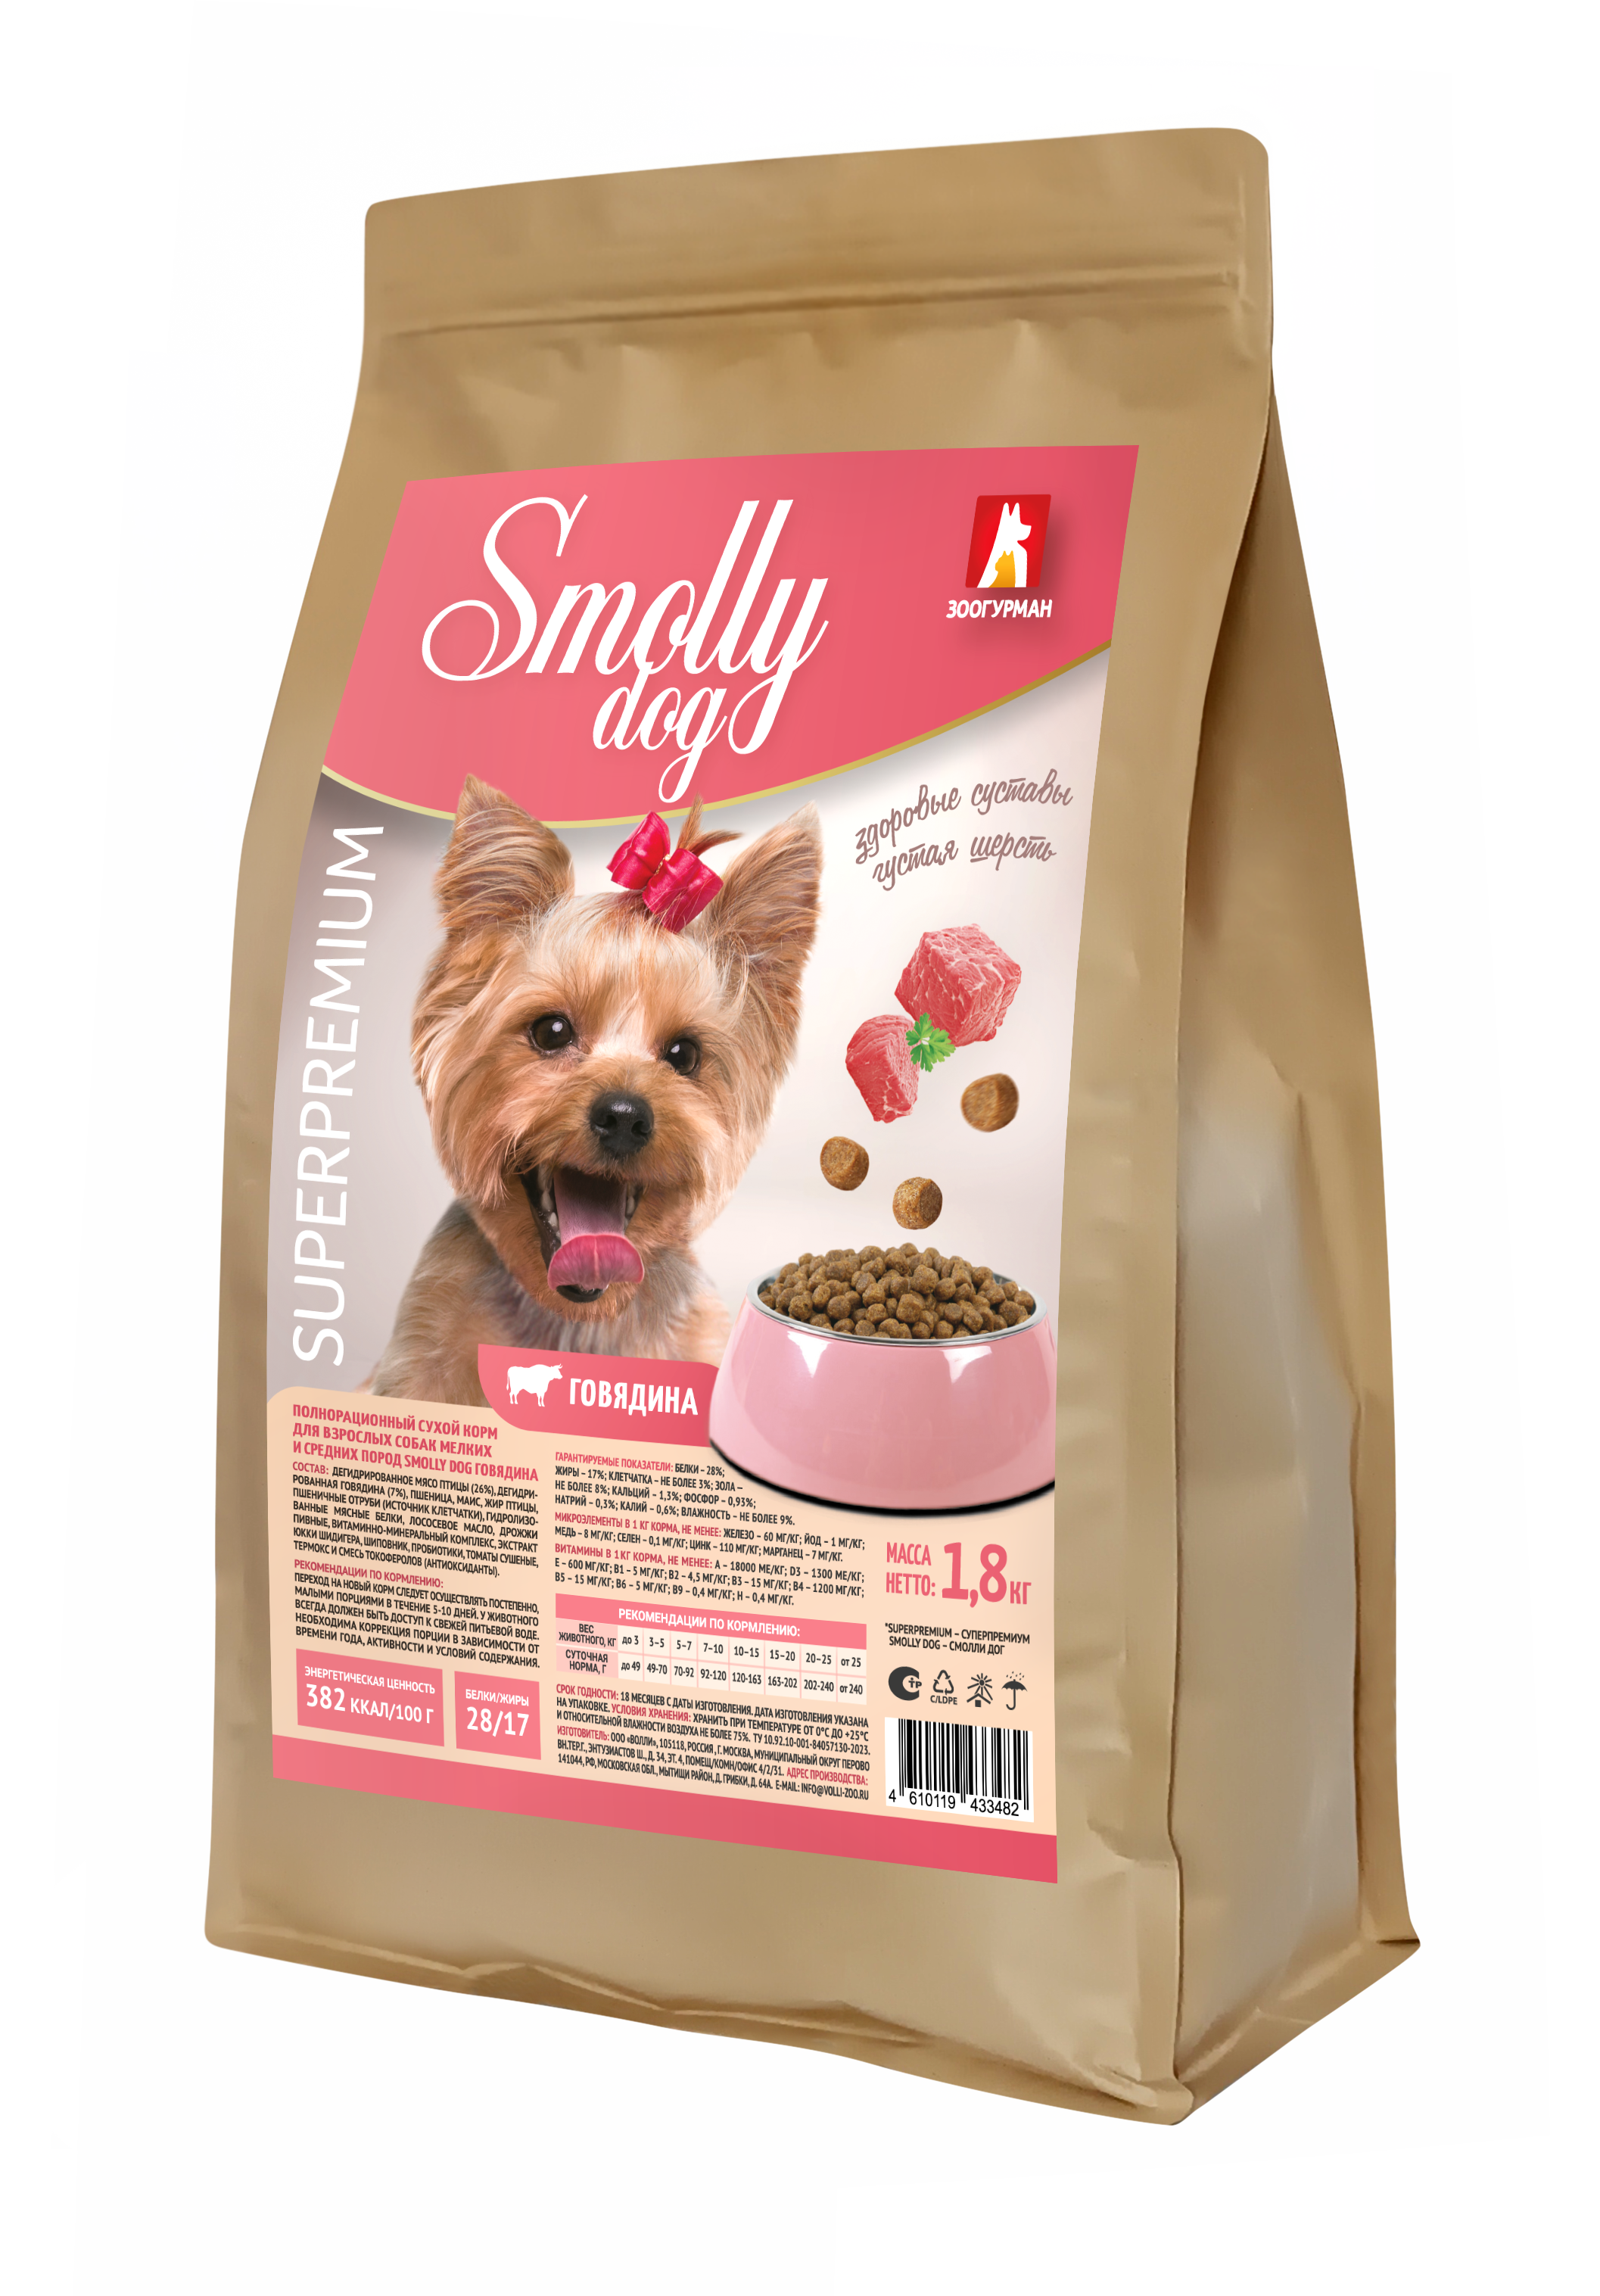 Zoogurman Smolly dog сухой корм для собак с говядиной 1.8кг фото, цены, купить